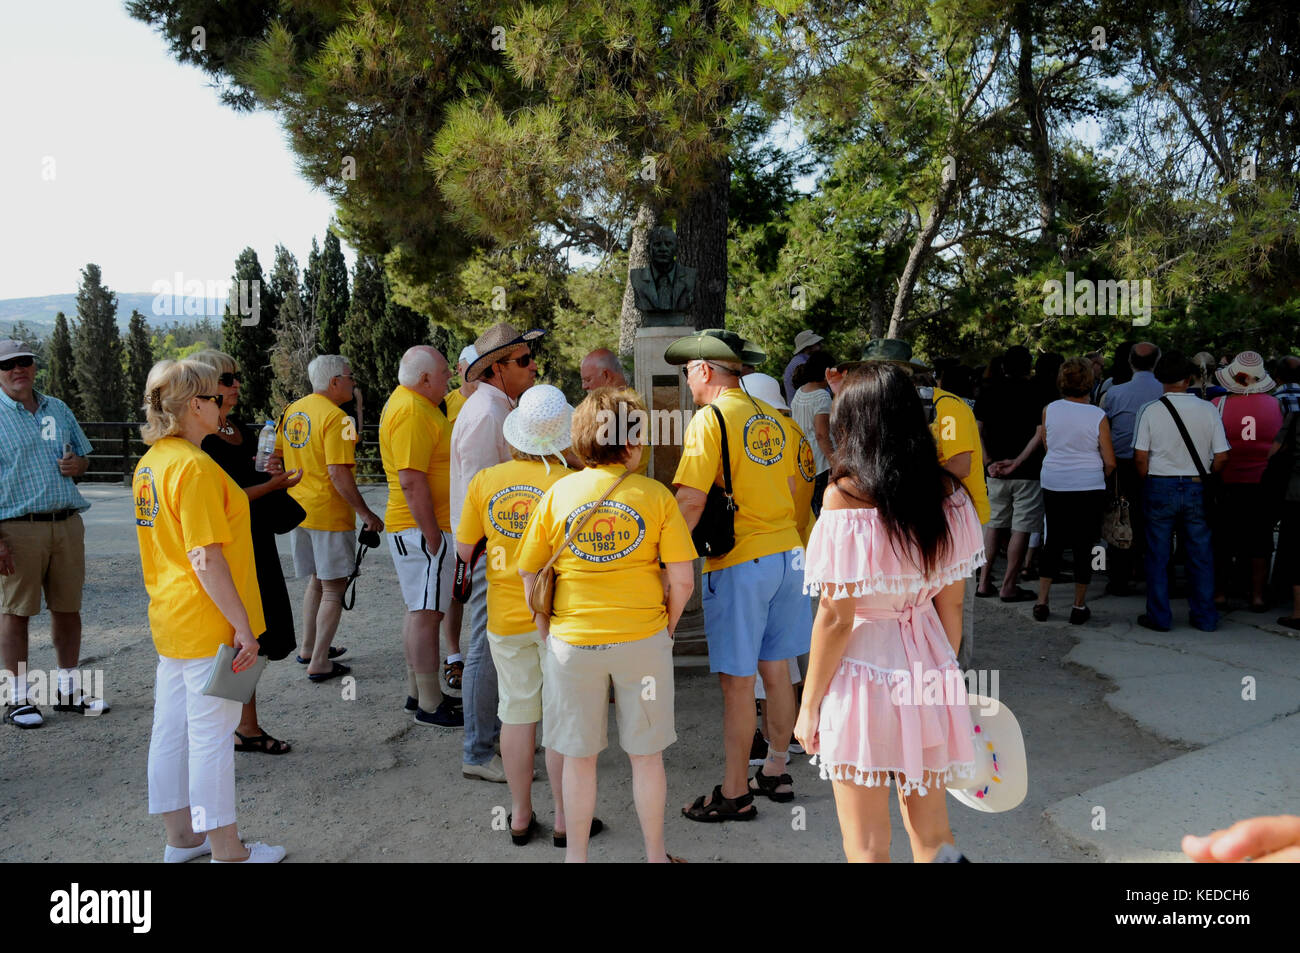 Los visitantes, muchos de tours y cruceros, se agolpan en el Palacio de Knossos, en la isla de Creta. Interesado en la historia o simplemente un sitio de marcar? Foto de stock